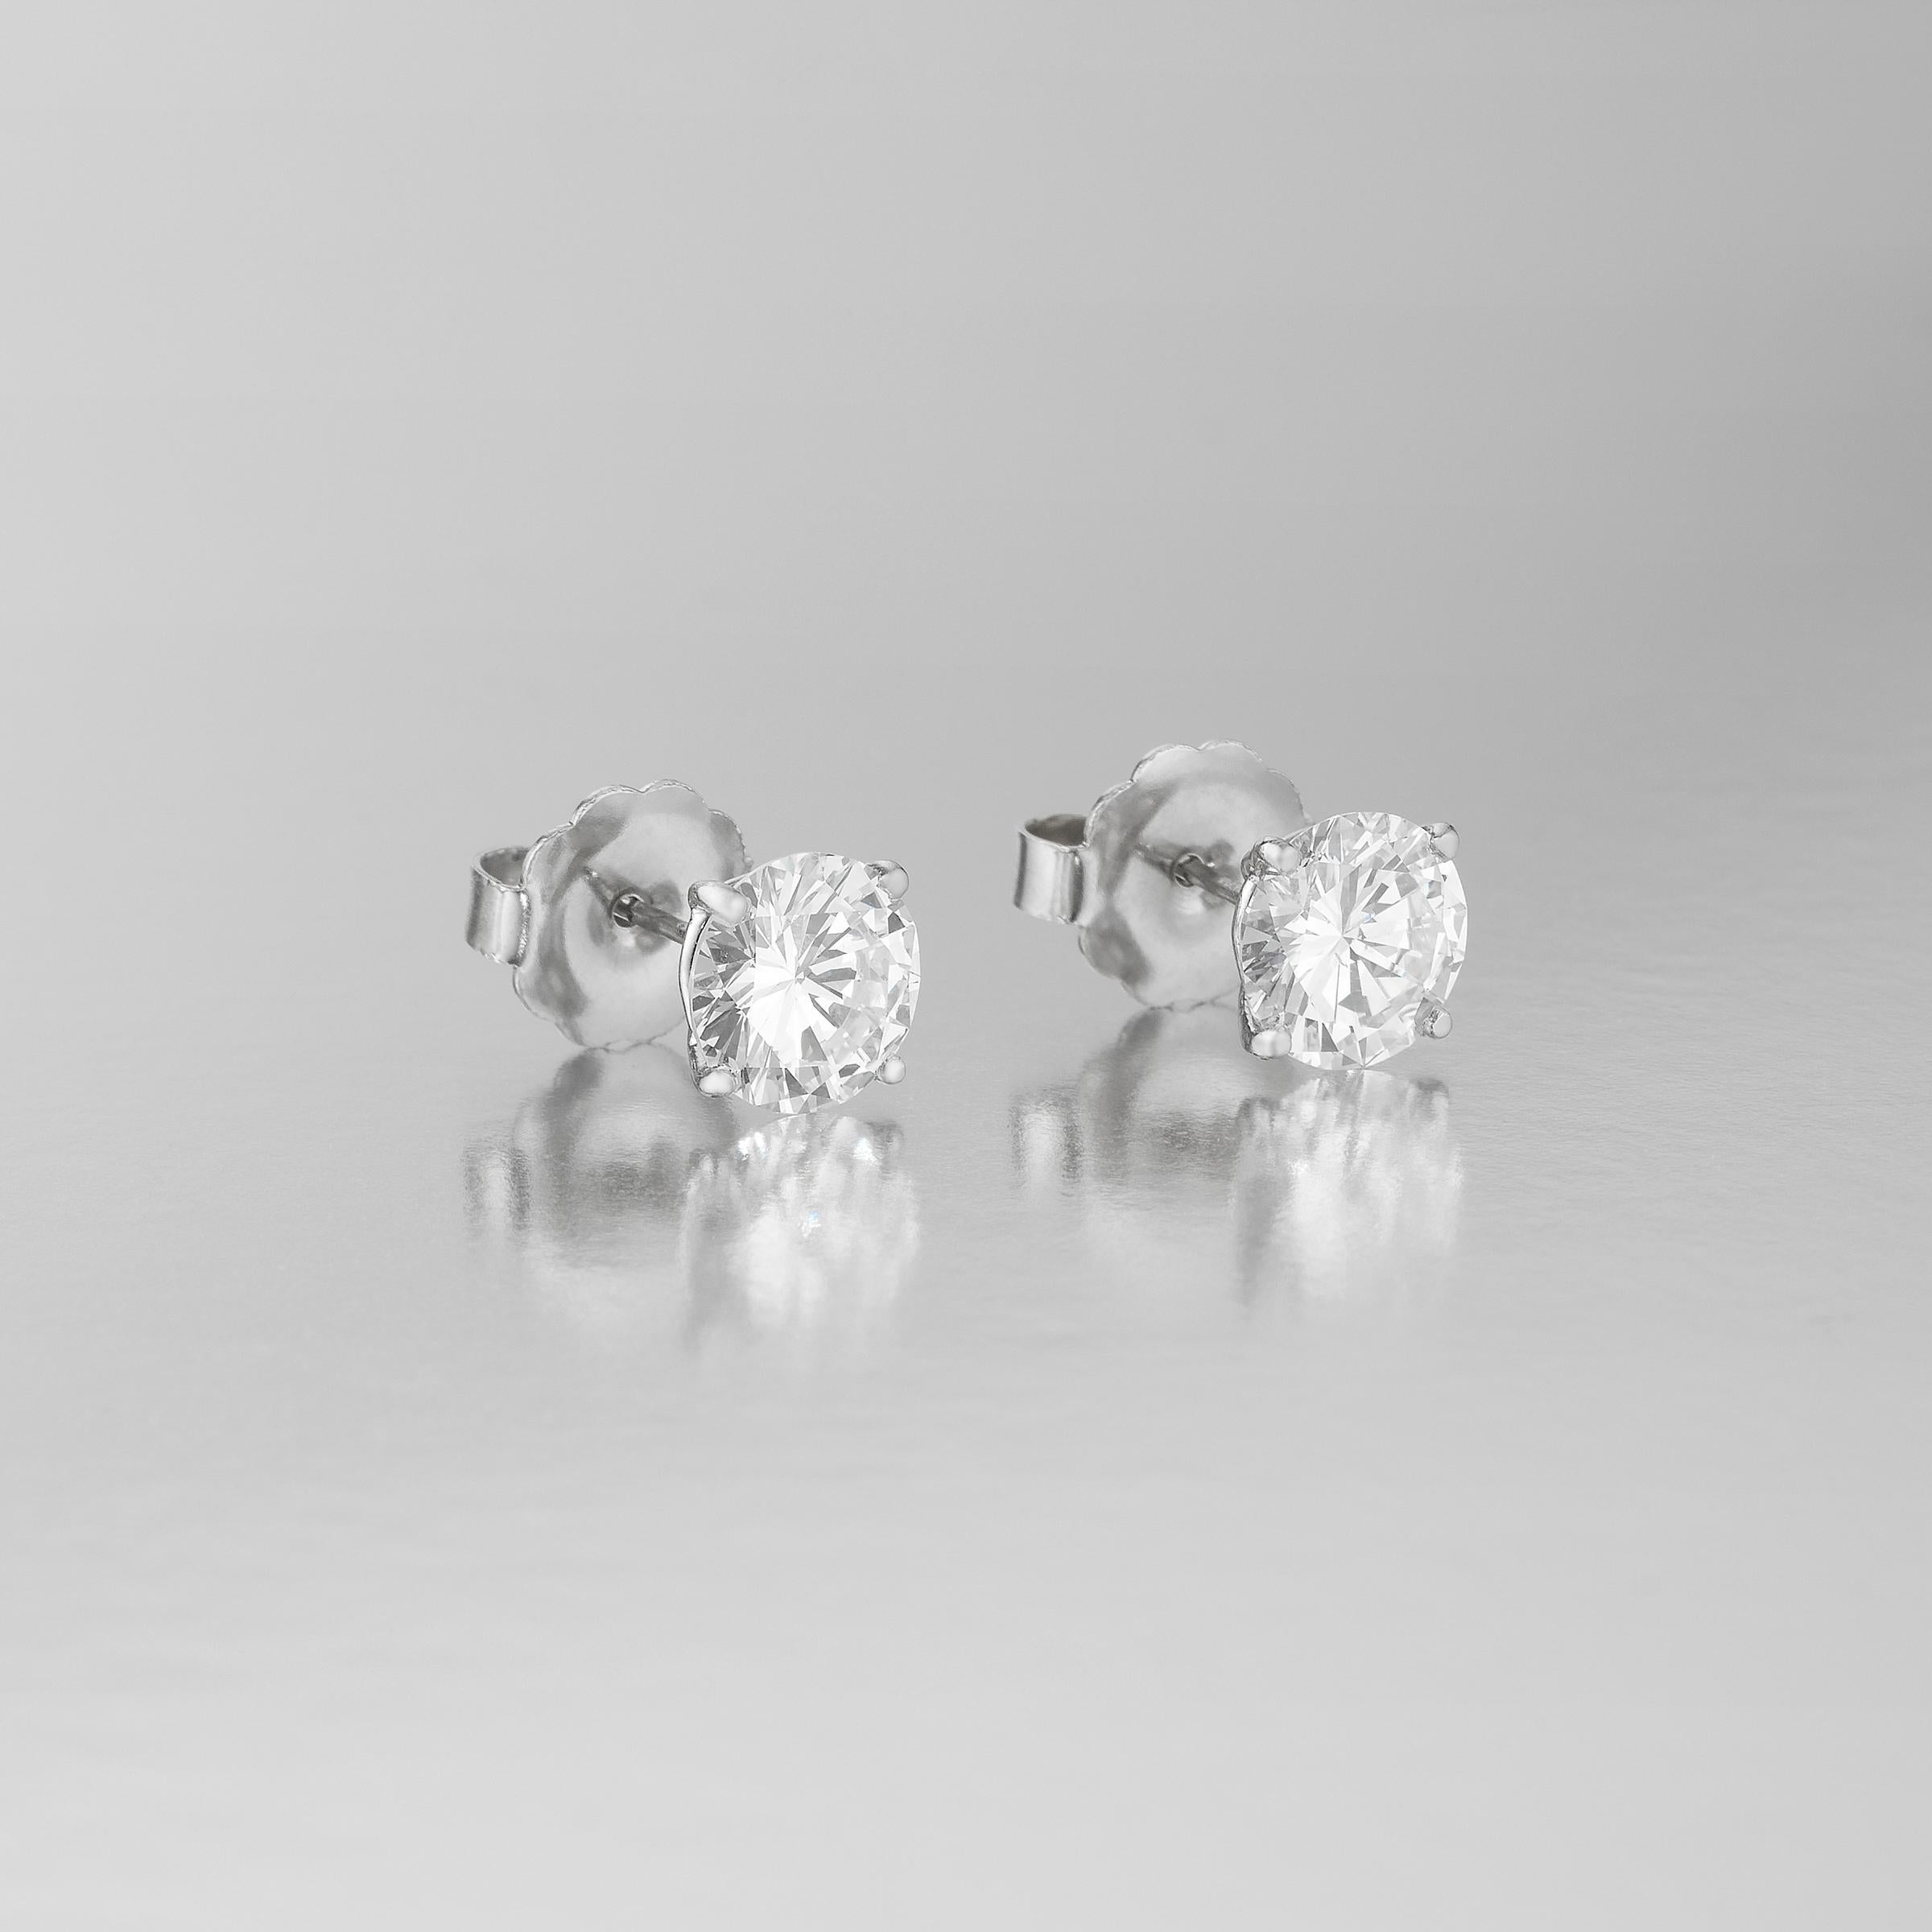 Außergewöhnliche Solitär-Ohrstecker mit 2 spektakulären GIA-zertifizierten runden Diamanten im Brillantschliff mit einem Gesamtgewicht von 4,10 Karat. Sie werden von 2 GIA-Zertifikaten begleitet, die zeigen, dass der runde Brillant von 2,10 Karat